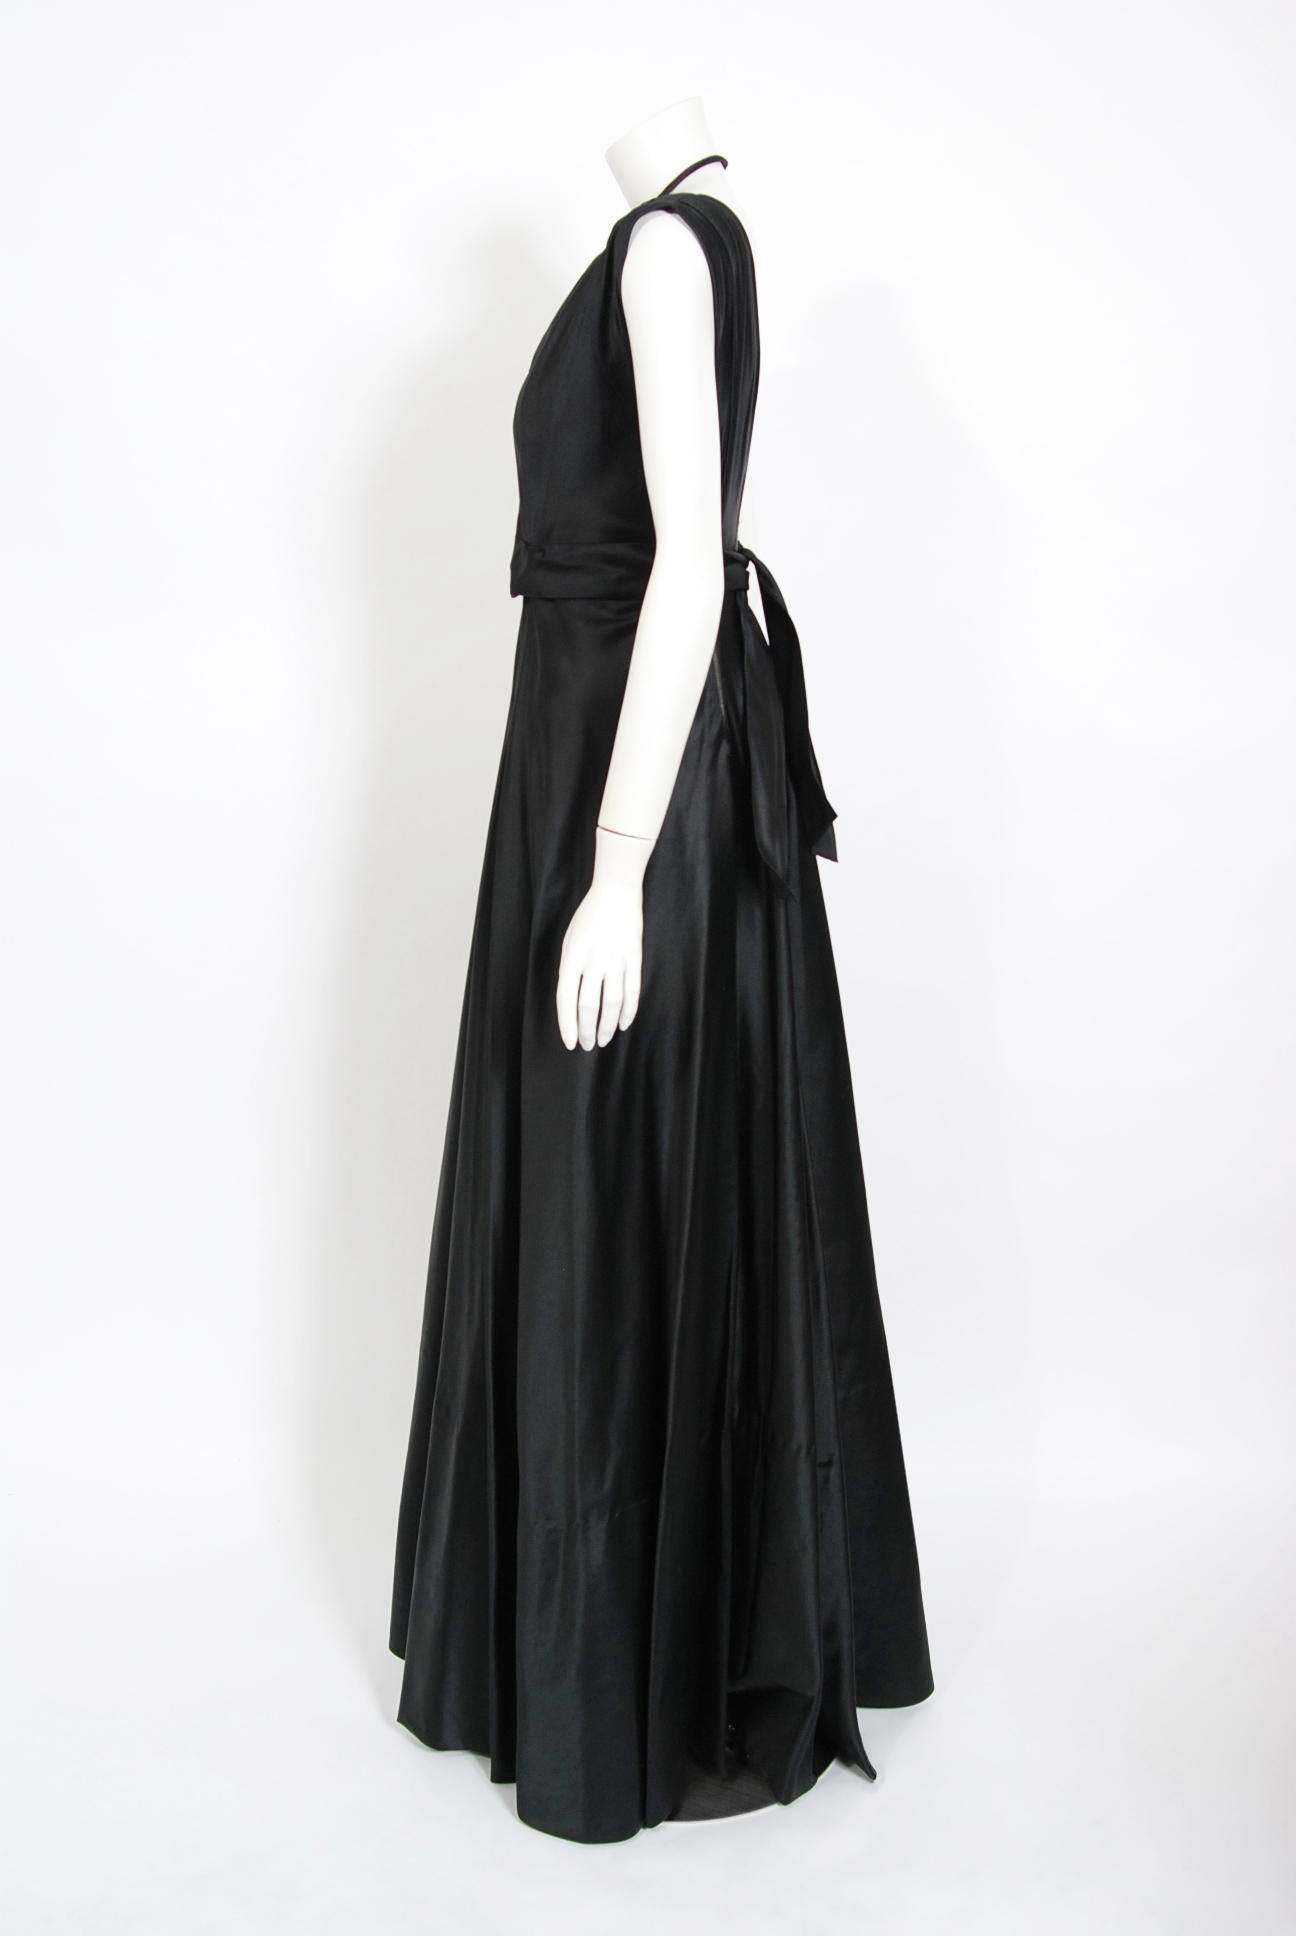 Noir Marcelle Dormoy French Couture - Robe vintage avec découpes dans le dos et découpes en soie noire, années 1940 en vente